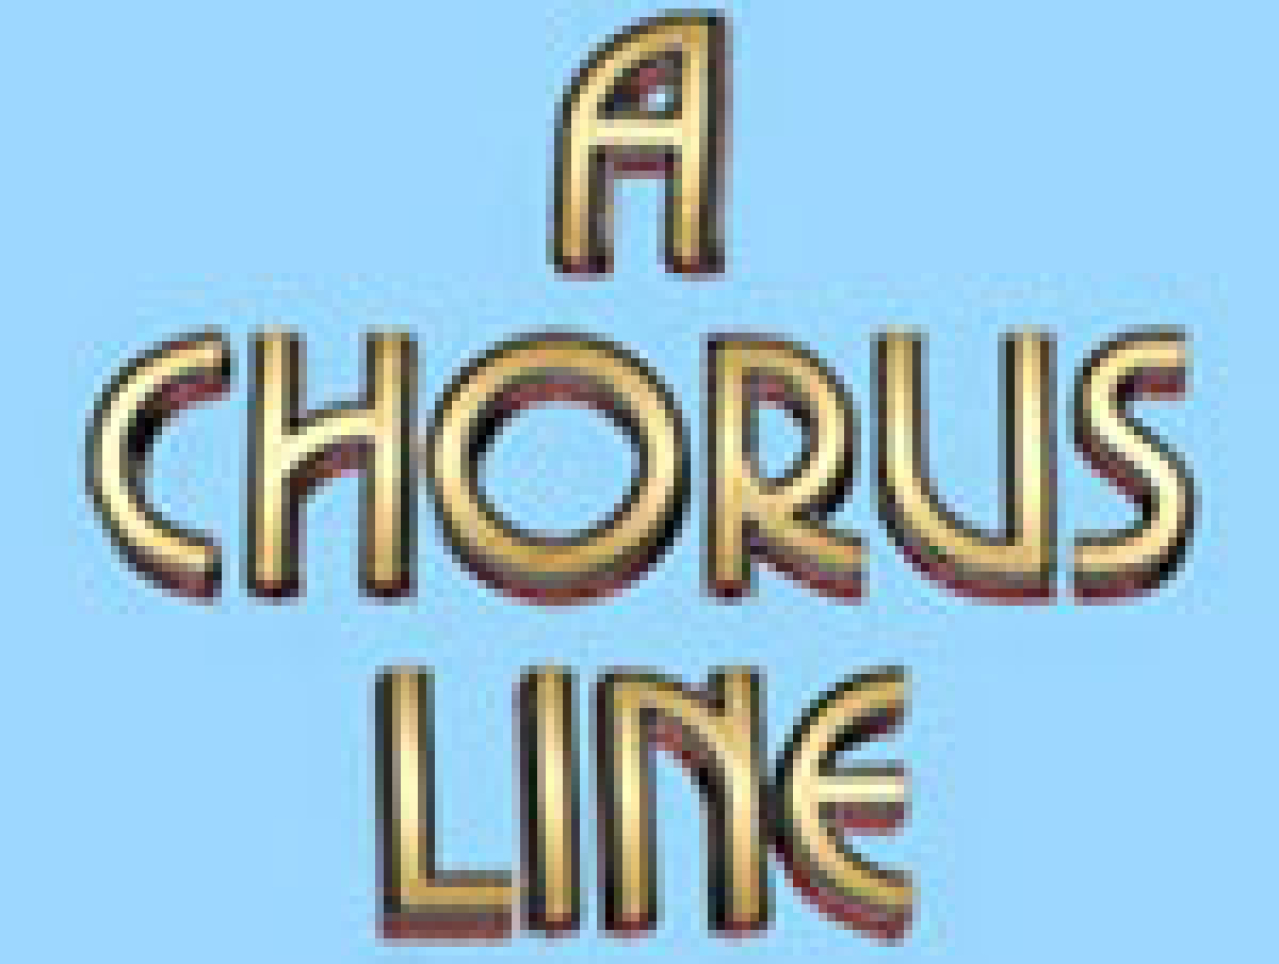 a chorus line logo 31169